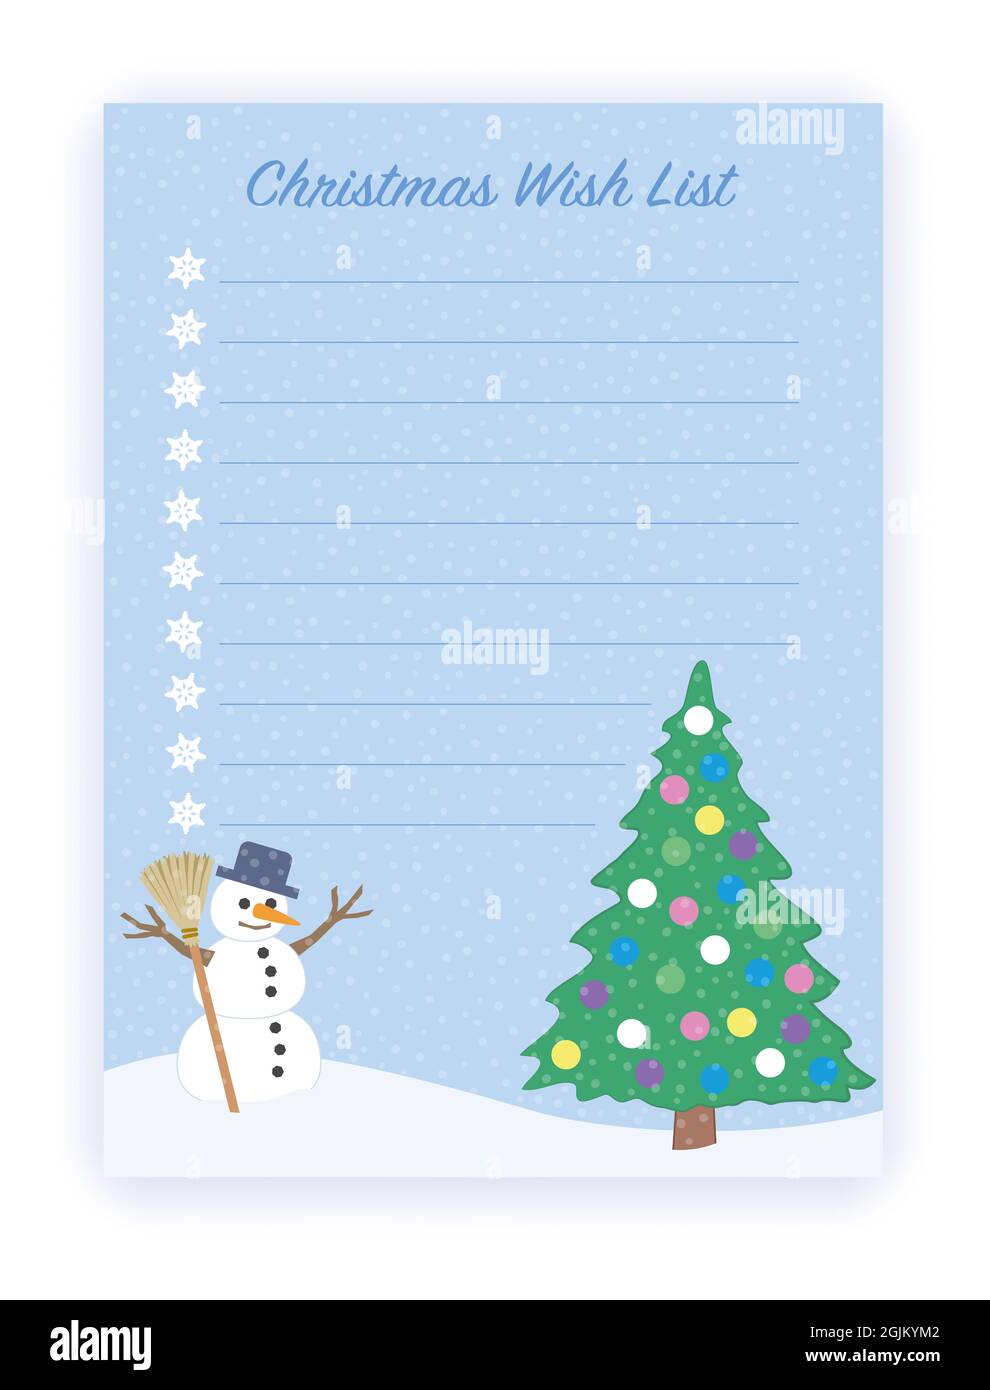 Weihnachts-Wunschliste mit zehn leeren Zeilen, die ausgefüllt werden müssen - verschneite Winterlandschaft mit glücklichem Schneemann und geschmücktem Weihnachtsbaum. Comic-Illustration. Stockfoto